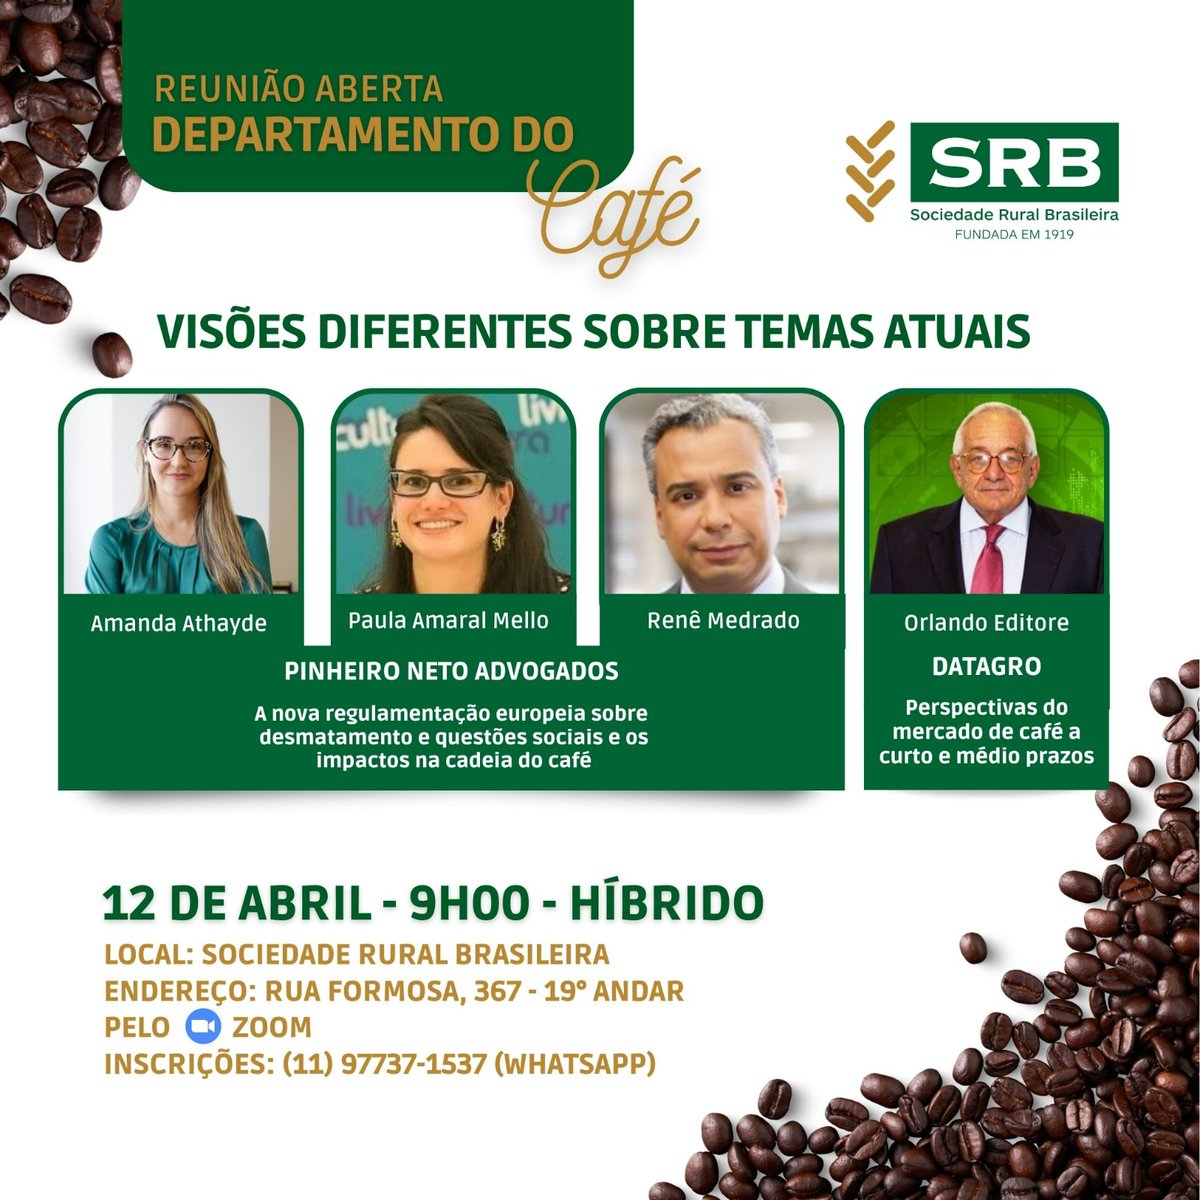 O Departamento do #Café da SRB ☕ fará uma reunião aberta sobre o mercado cafeeiro mundial no dia 12 de abril, 9h. Na pauta, a nova regulamentação europeia sobre desmatamento e as perspectivas do mercado de café a curto e médio prazos.📲 Confirmações pelo WhatsApp (11) 97737-1537